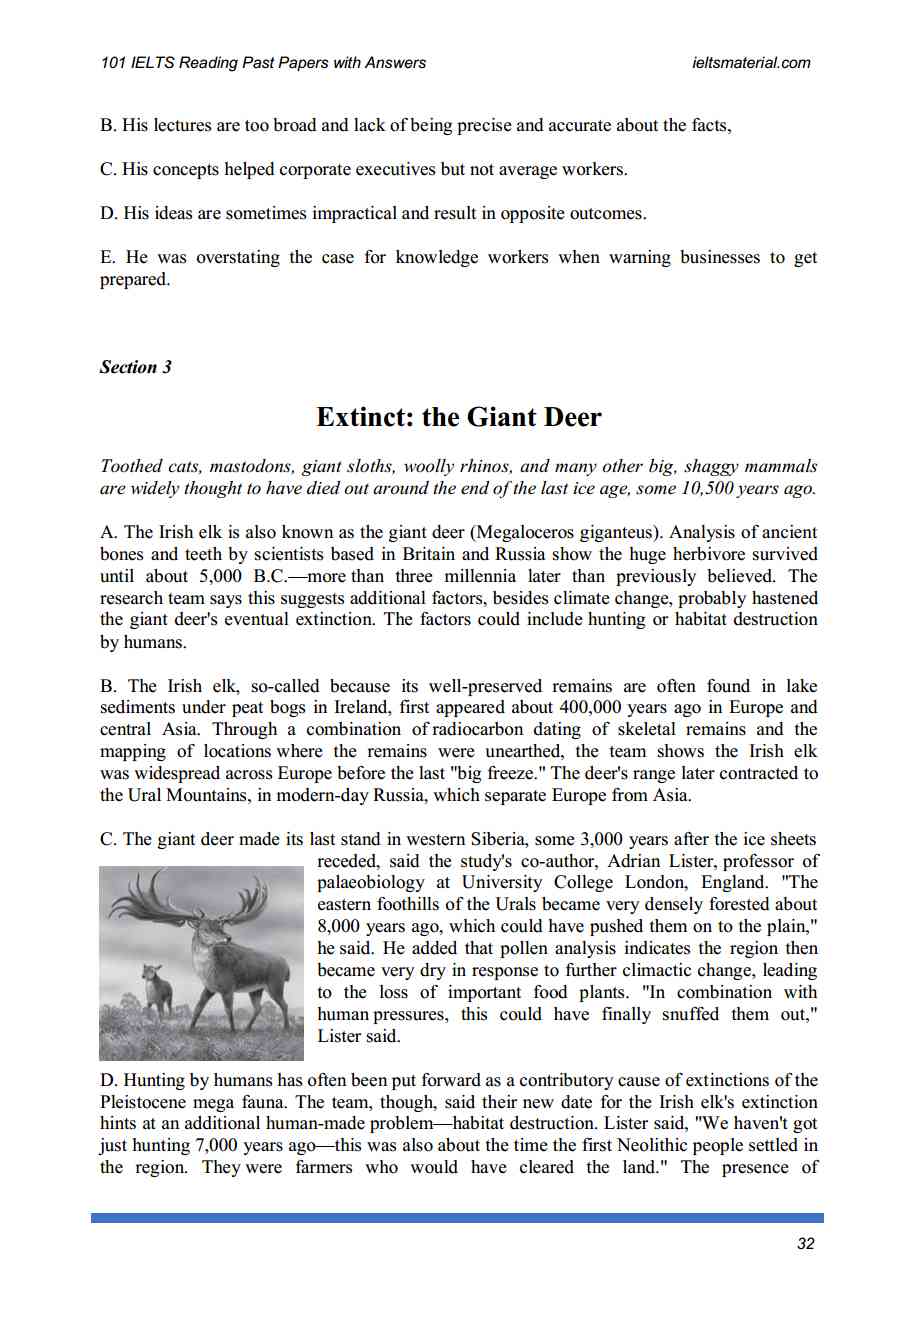 ielts essays pdf free download